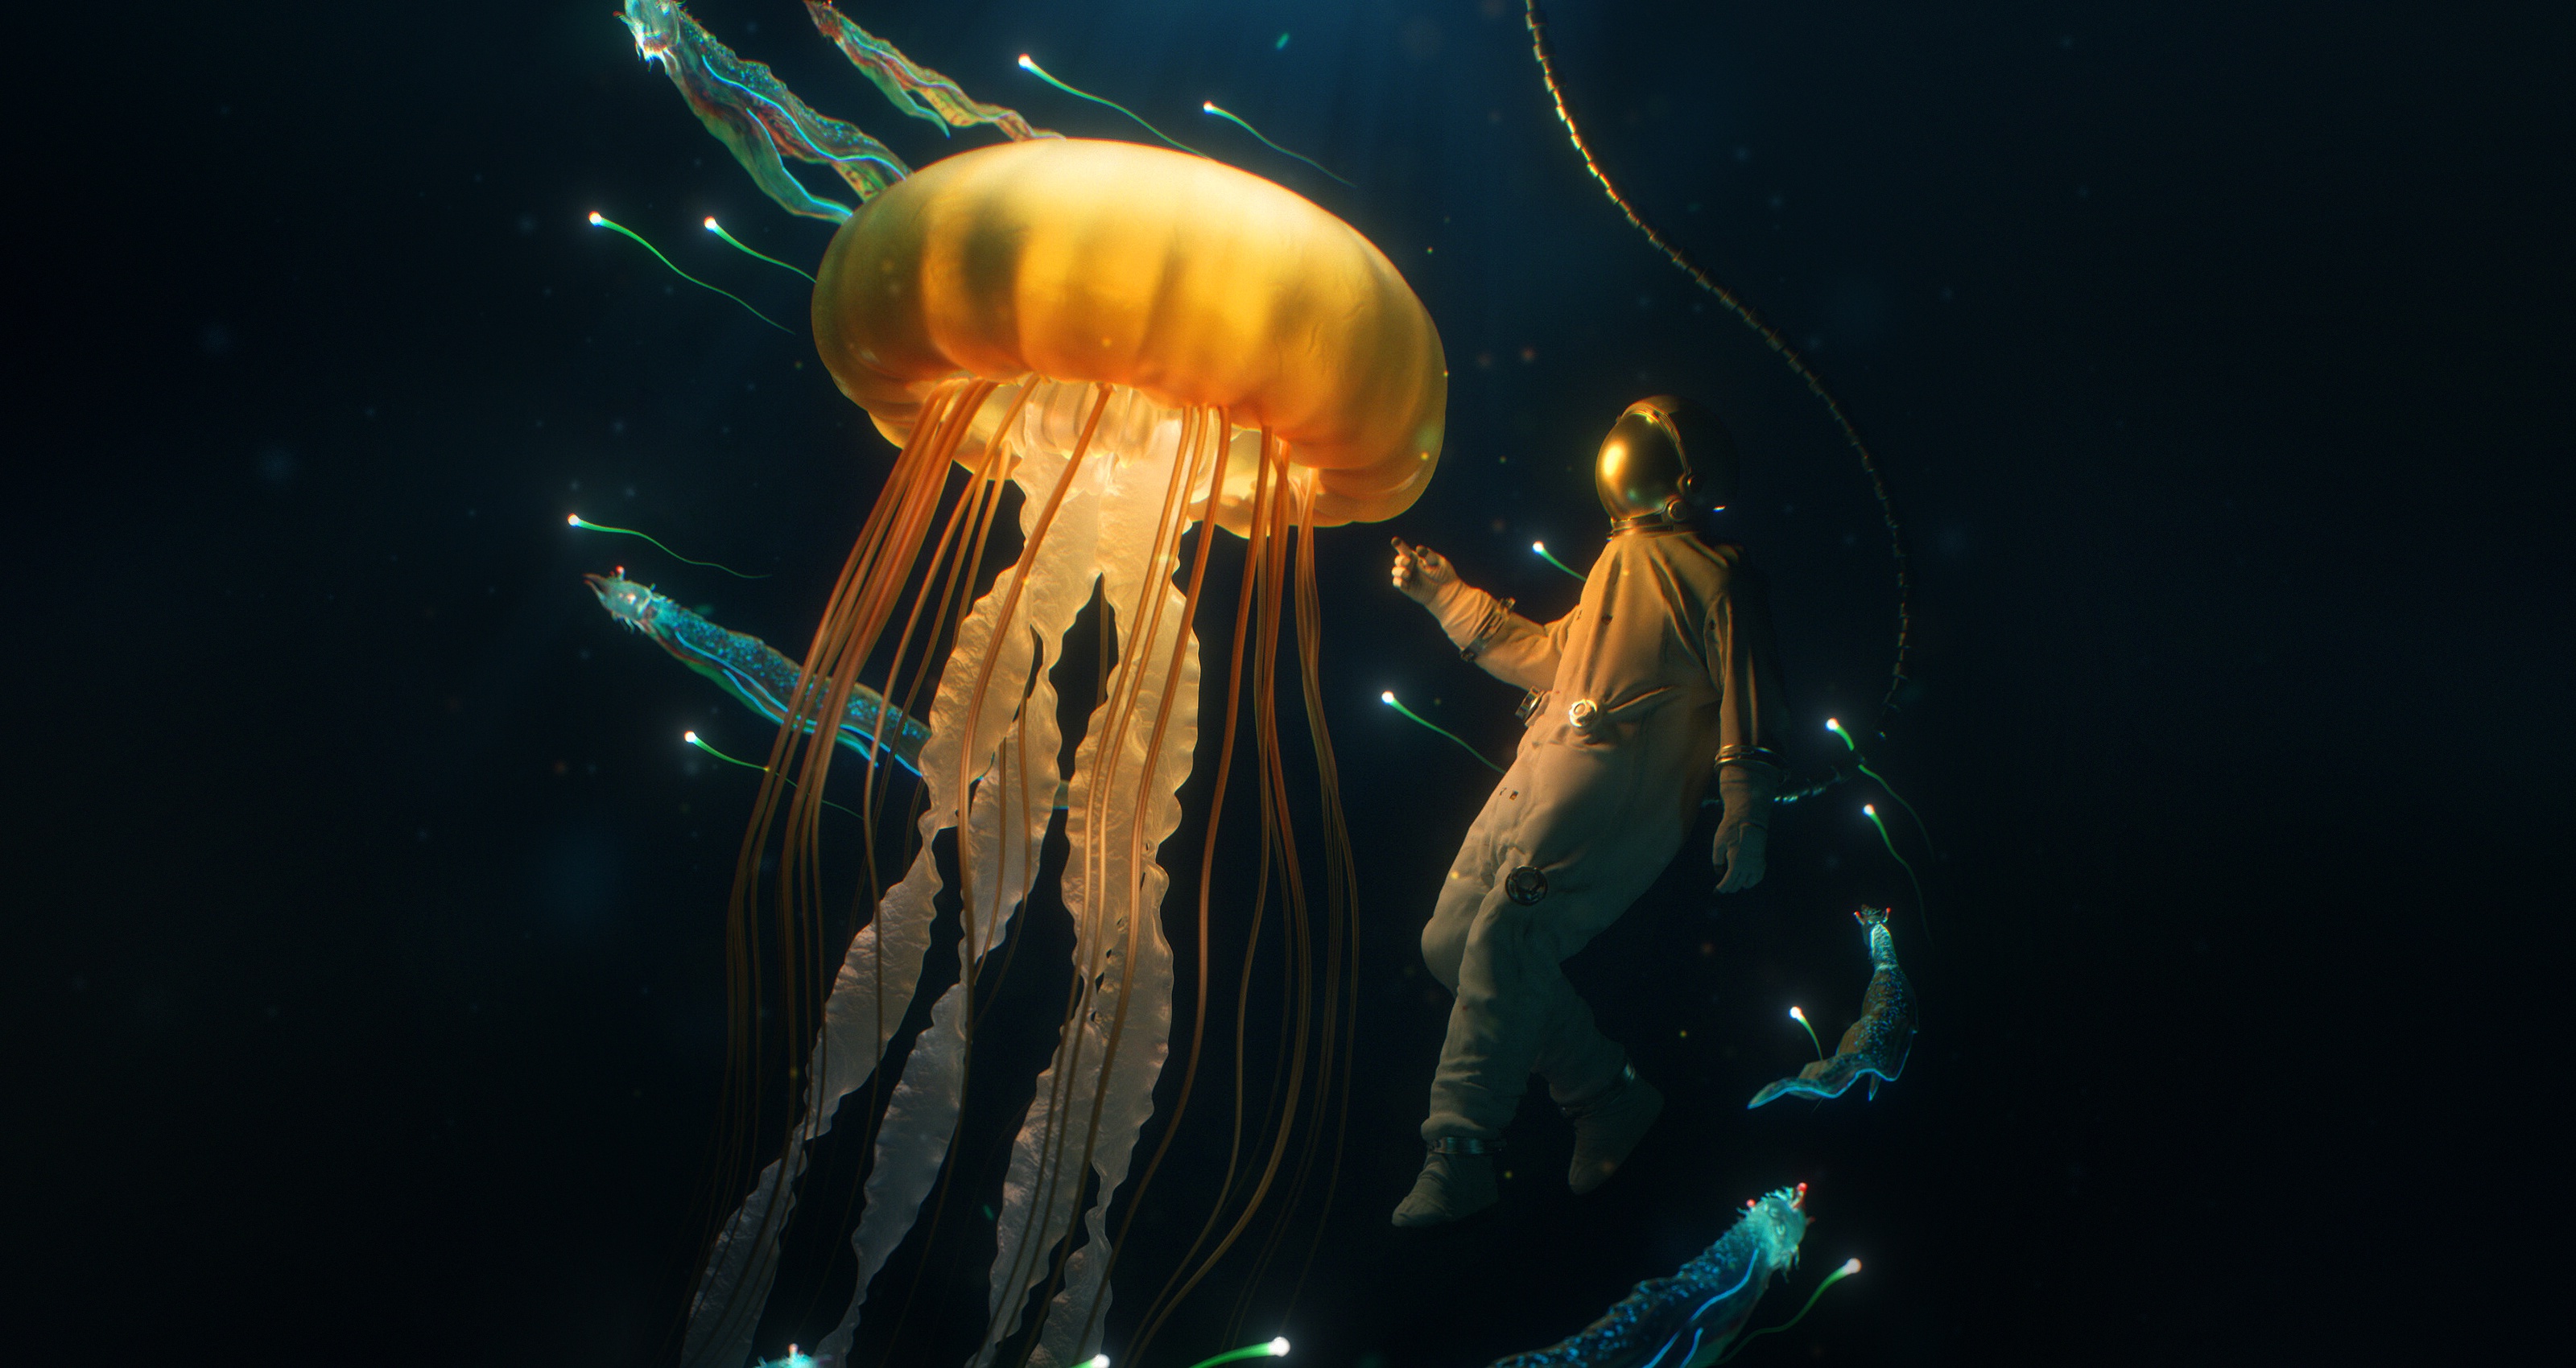 fantasy, underwater, diver, jellyfish 2160p